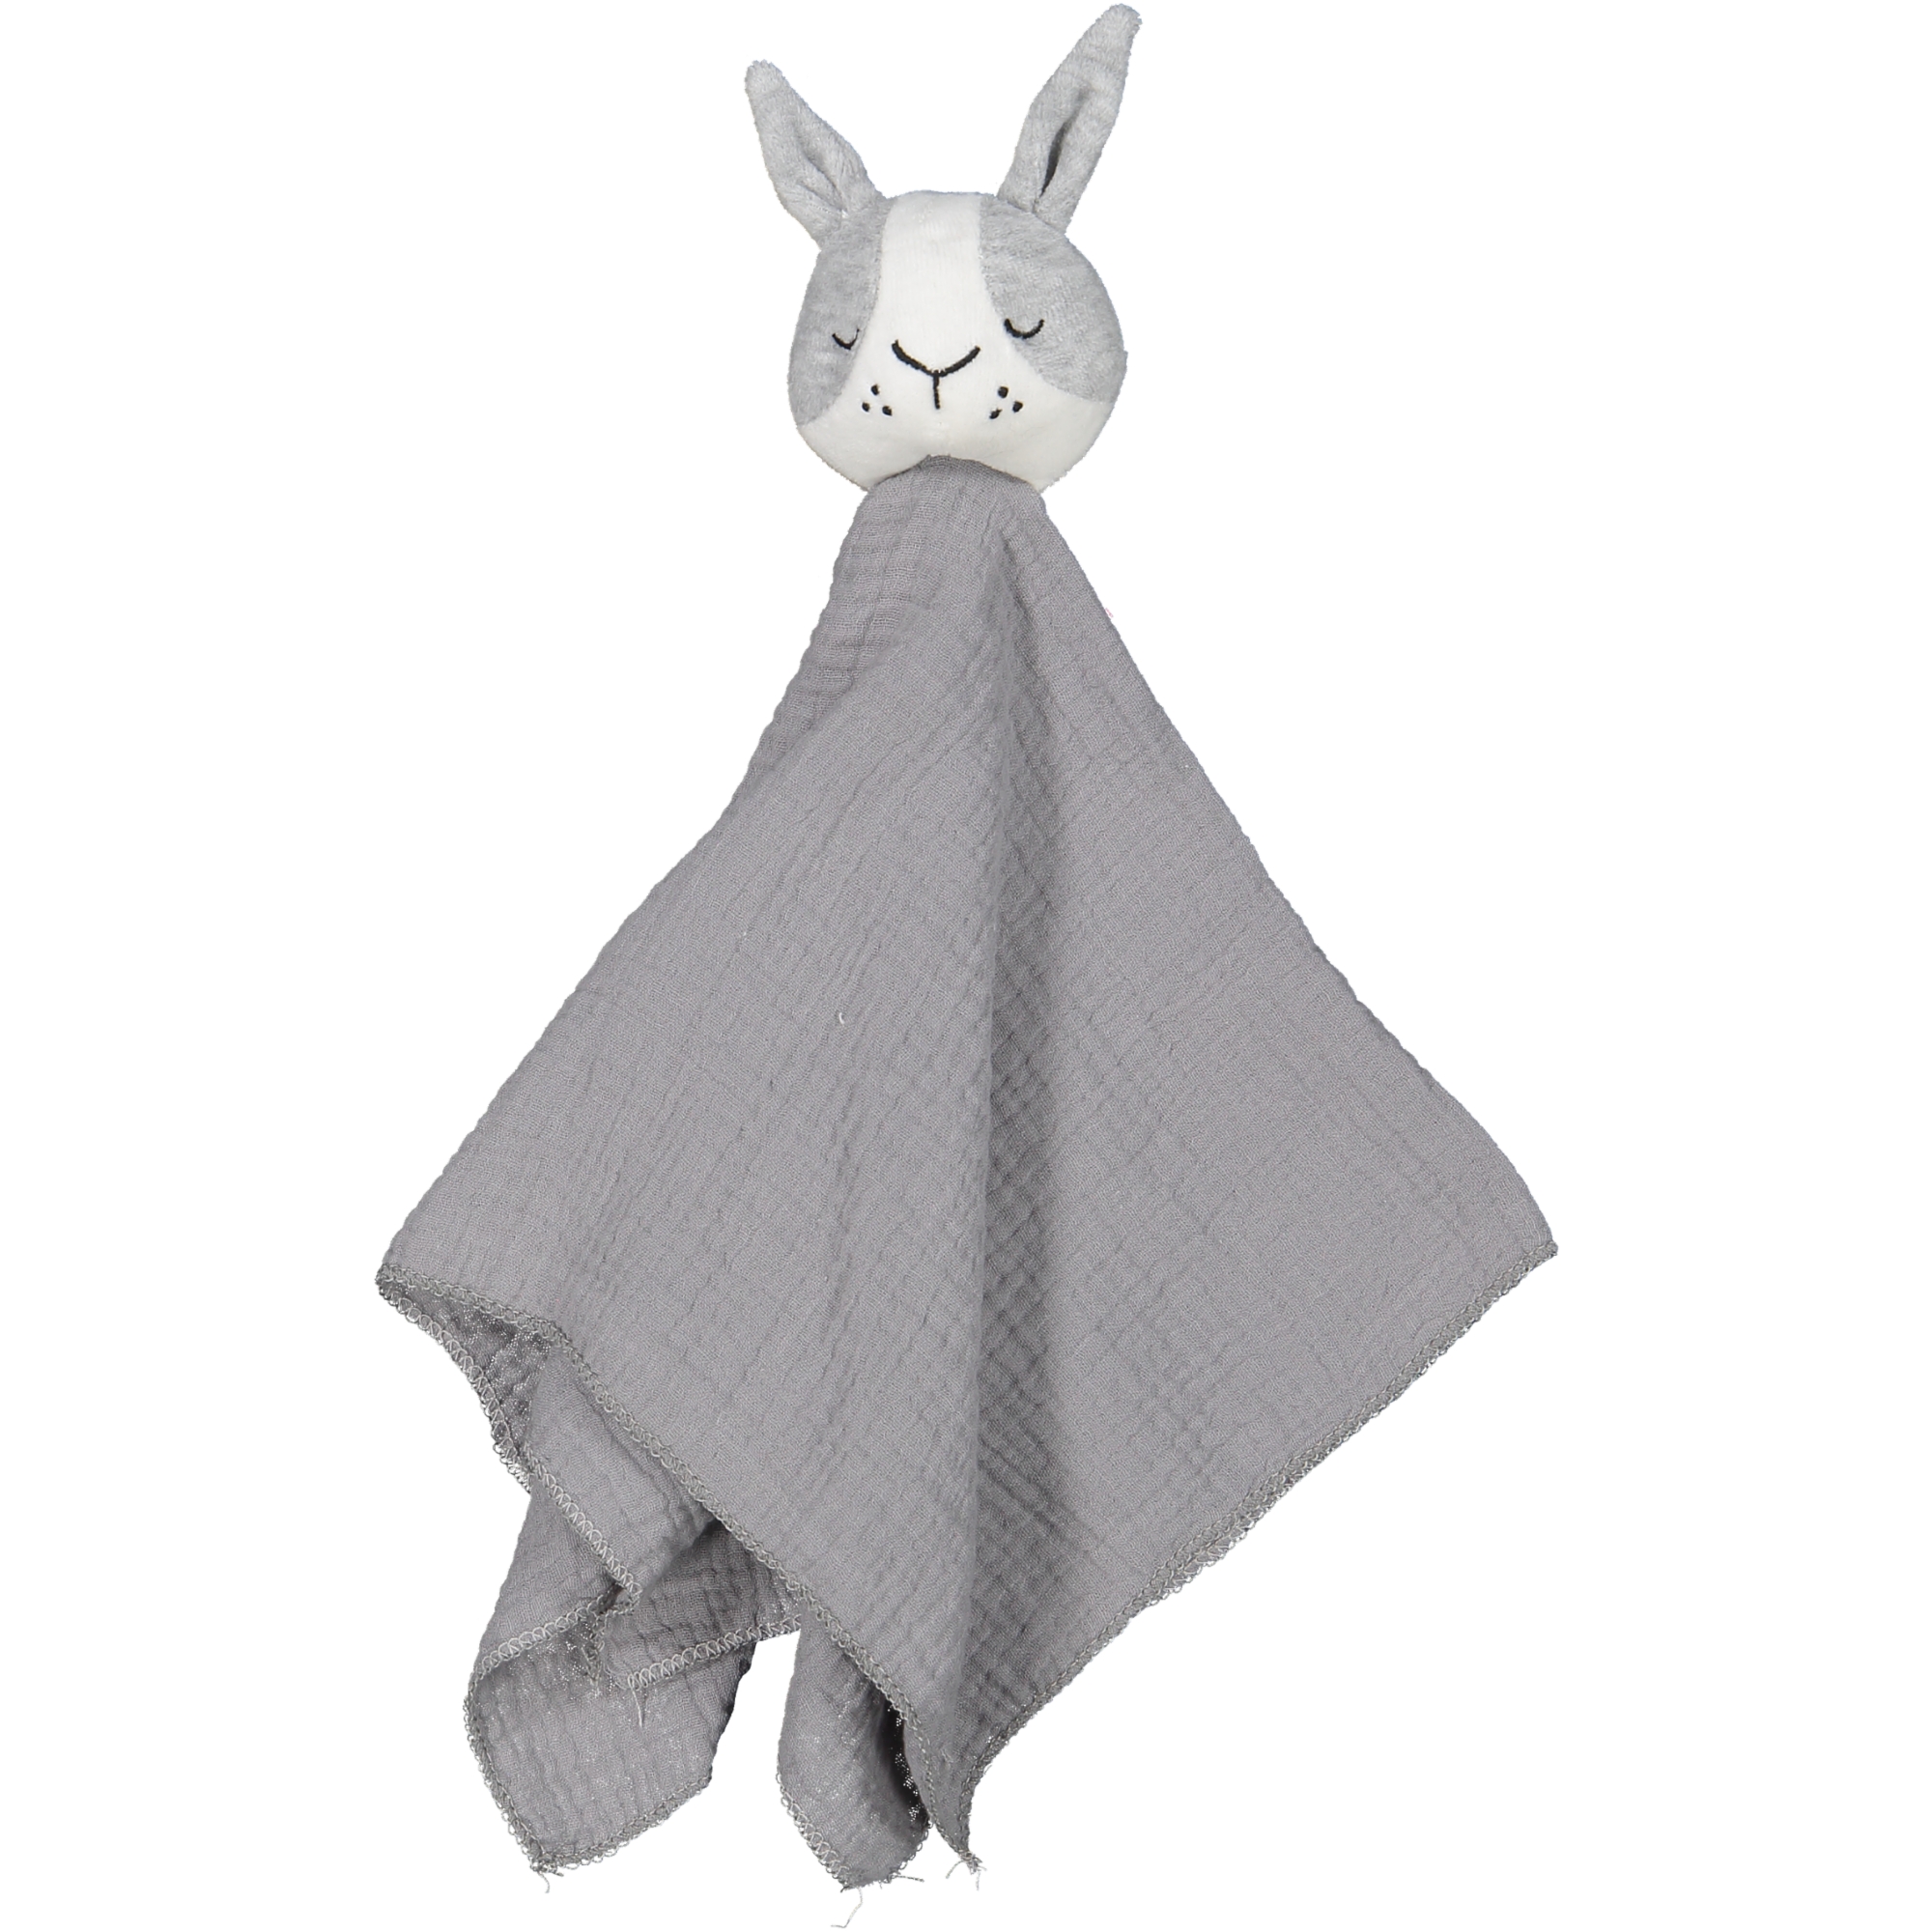 Cuddly rabbit Grey/white